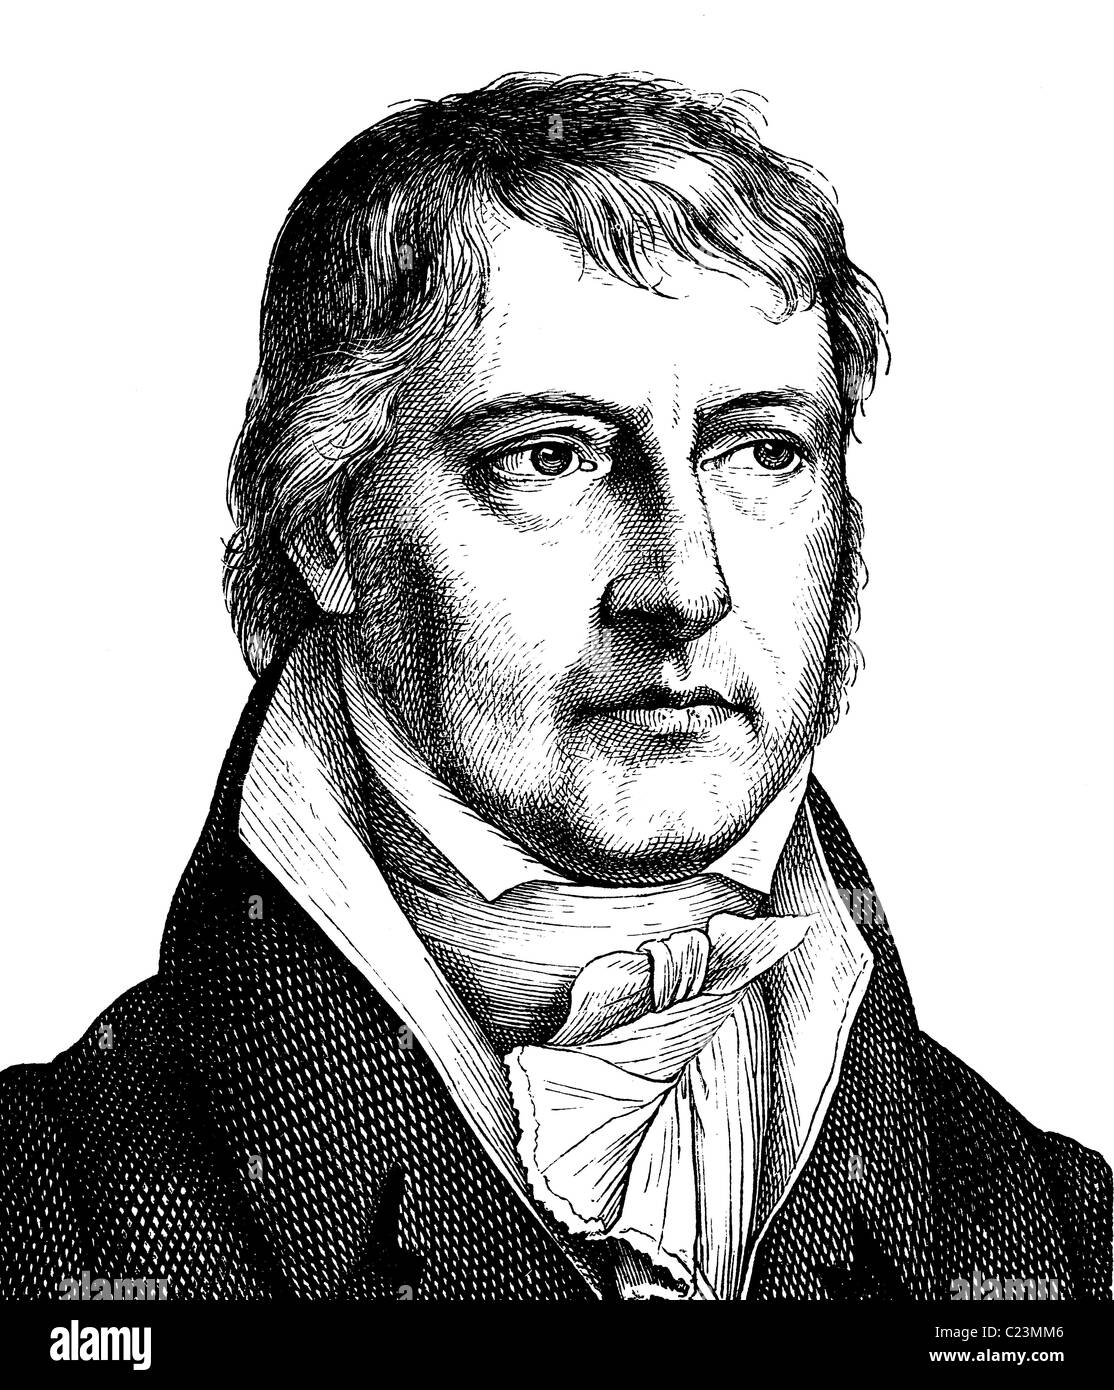 Mejora de la imagen digital de Georg Wilhelm Friedrich Hegel, 1770 - 1831, filósofo alemán, retrato, ilustración histórica Foto de stock